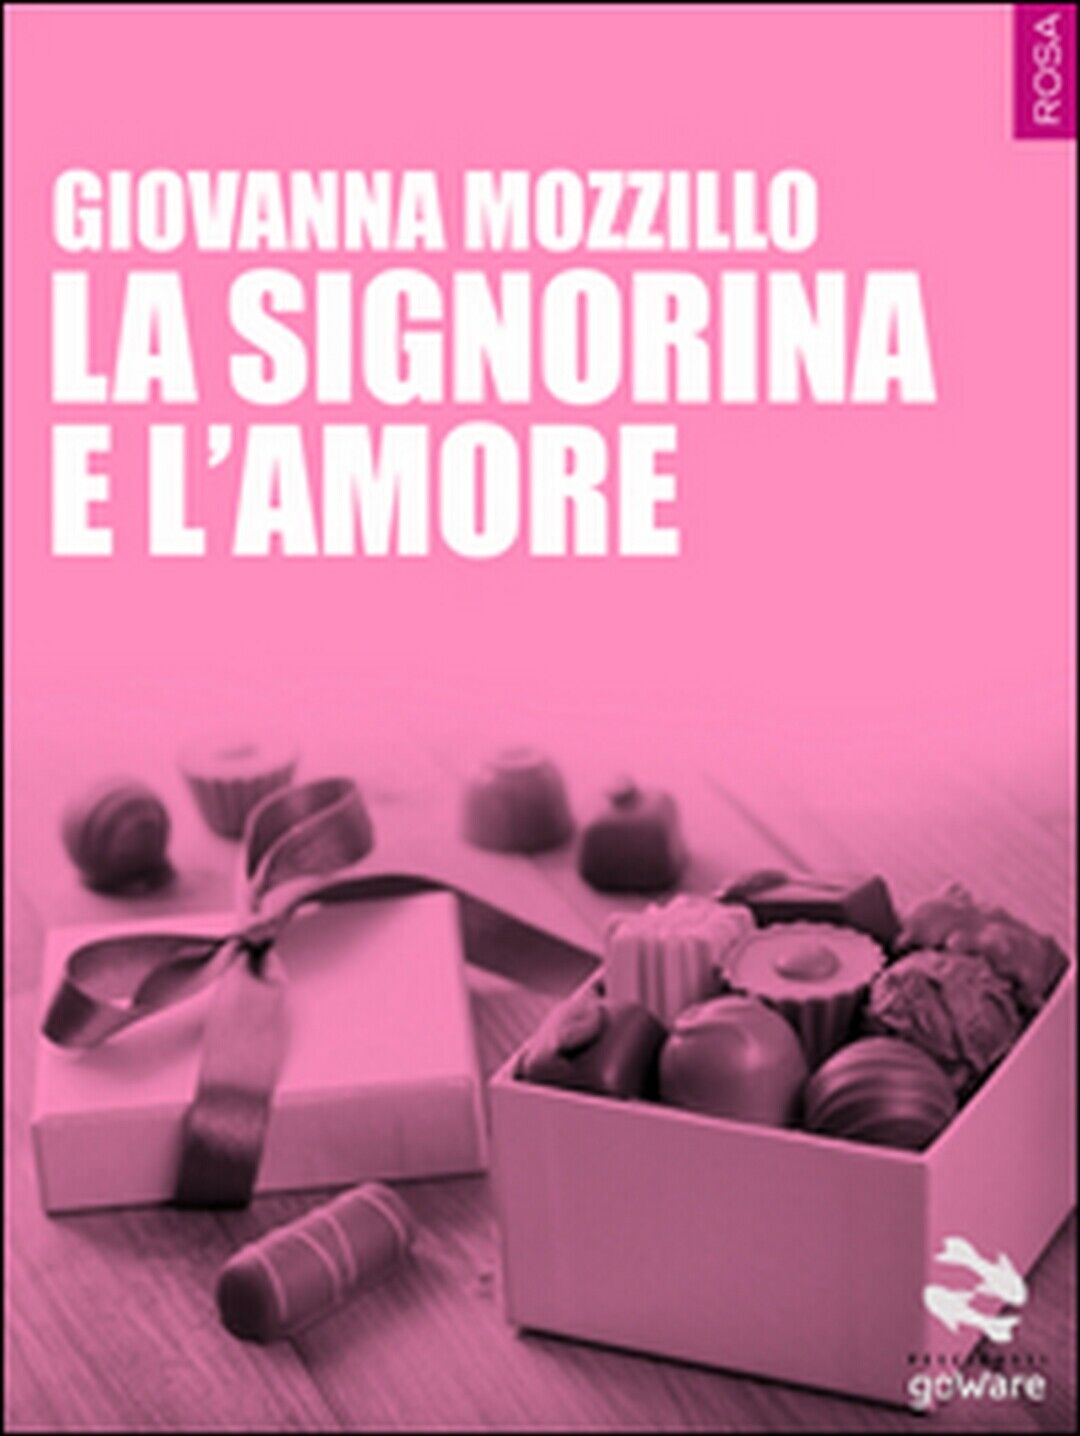 La signorina e L'amore  di Giovanna Mozzillo,  2015,  Goware